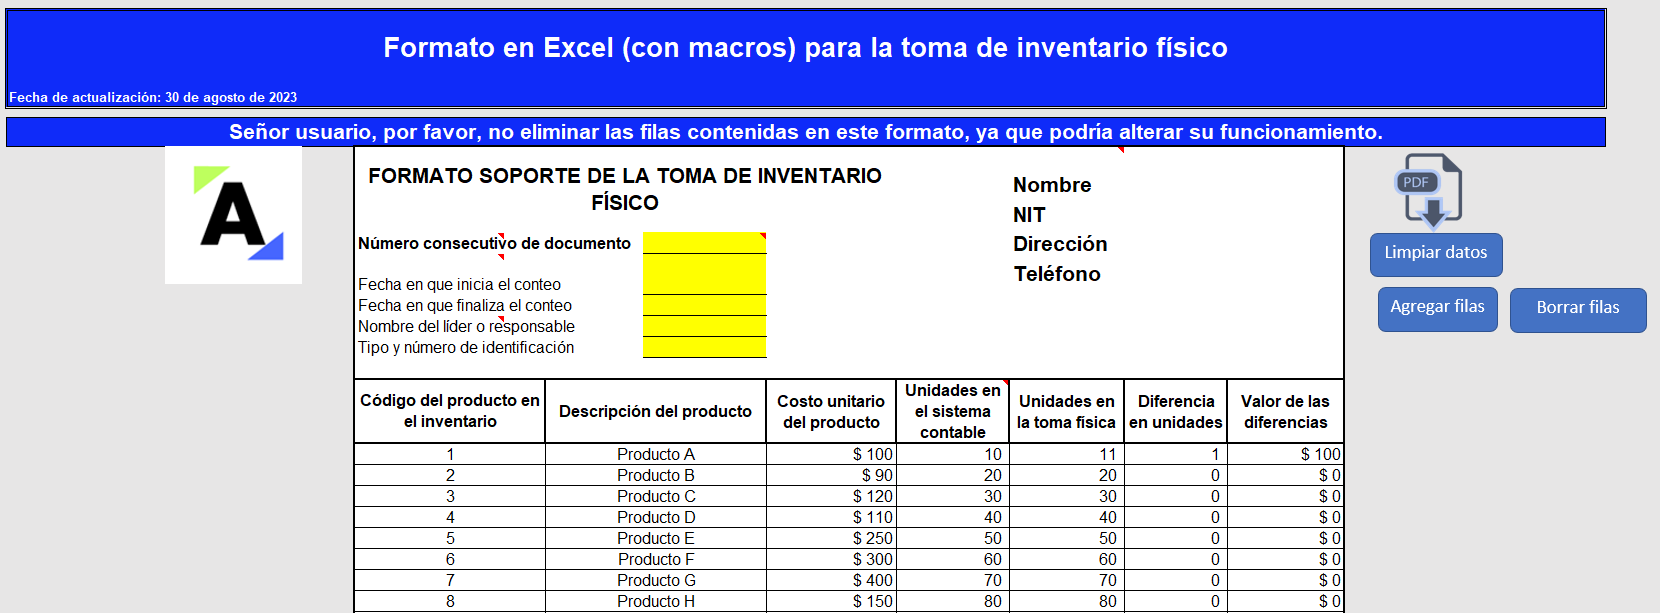 Formato en Excel para la toma de inventario físico (con macros)